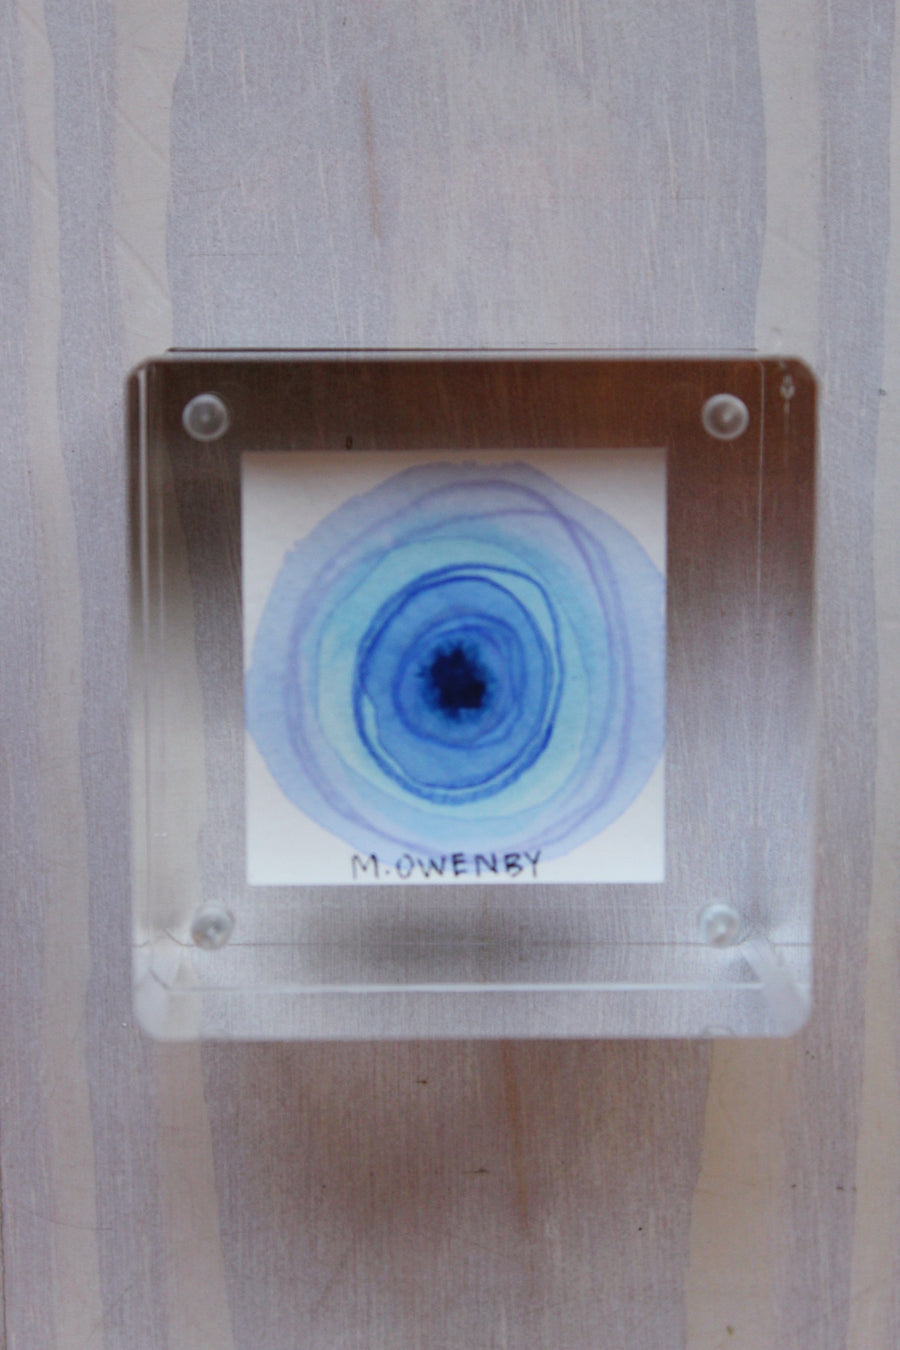 Cubed God’s Eye  - Ocular 43 - Michelle Owenby Design